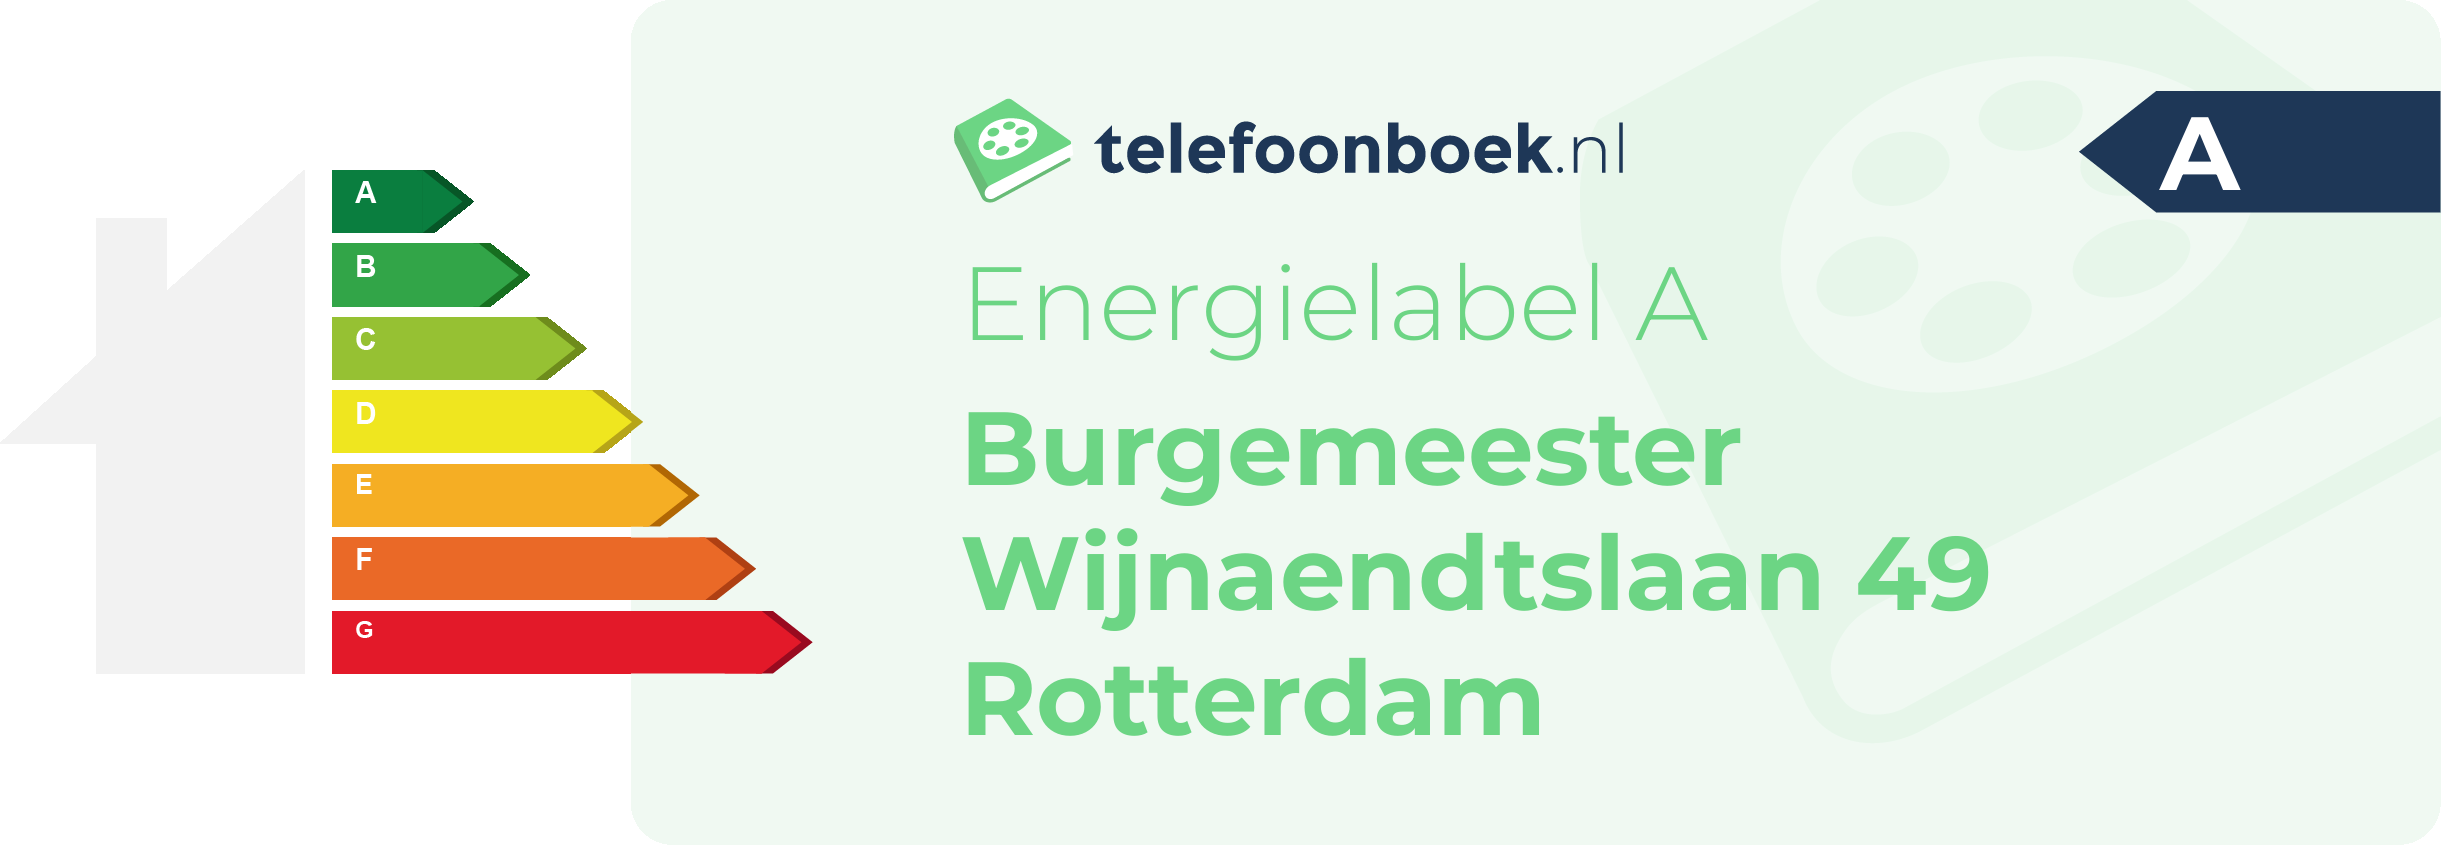 Energielabel Burgemeester Wijnaendtslaan 49 Rotterdam